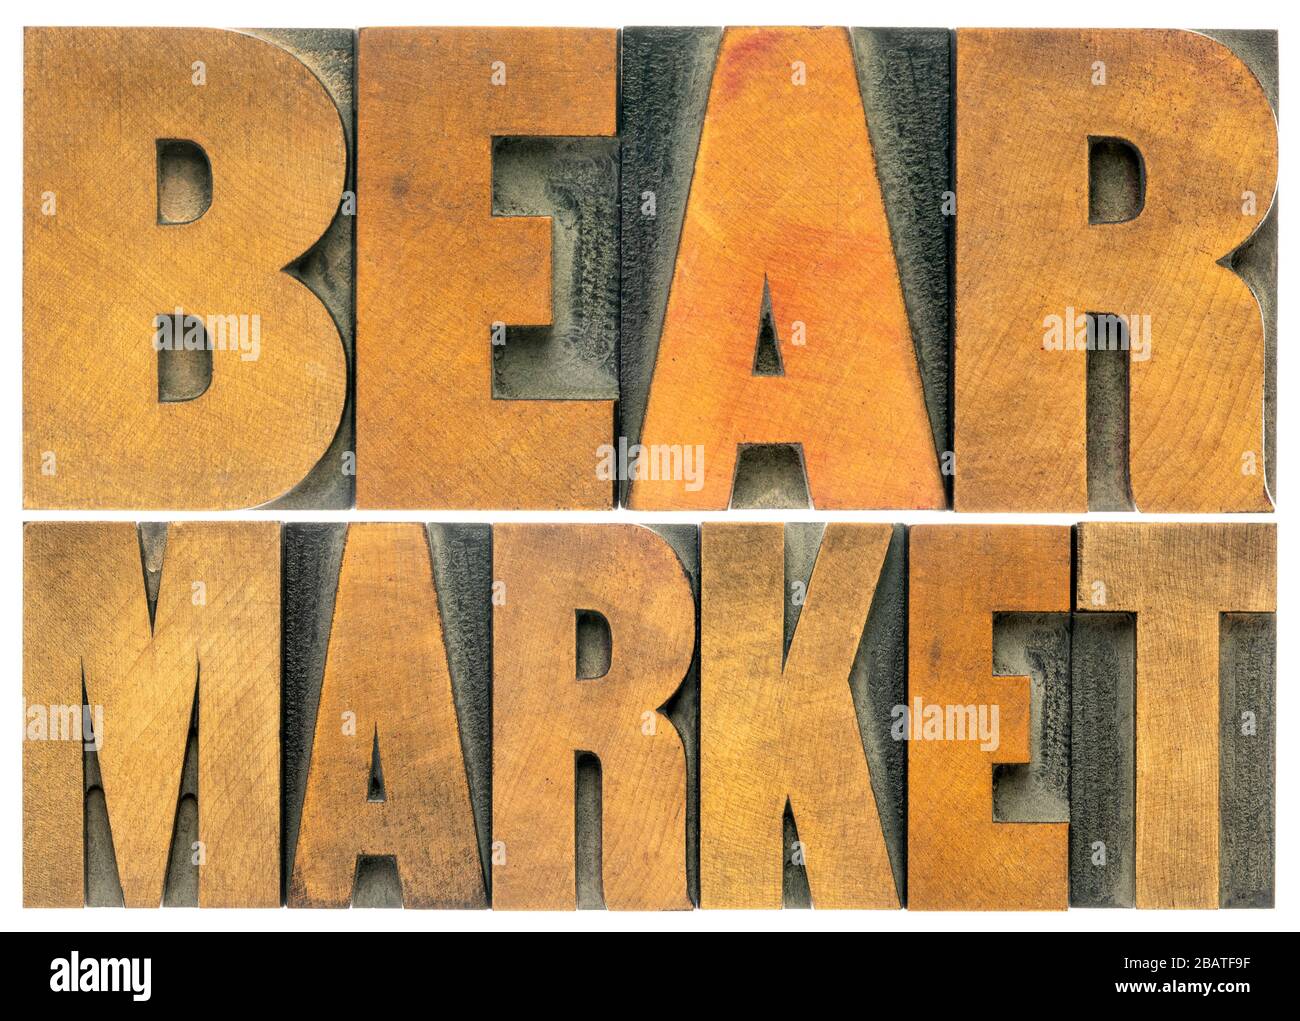 bear mercado palabra aislada resumen en el tipo de madera, pesimismo, finanzas, negocios y economía concepto de recesión Foto de stock